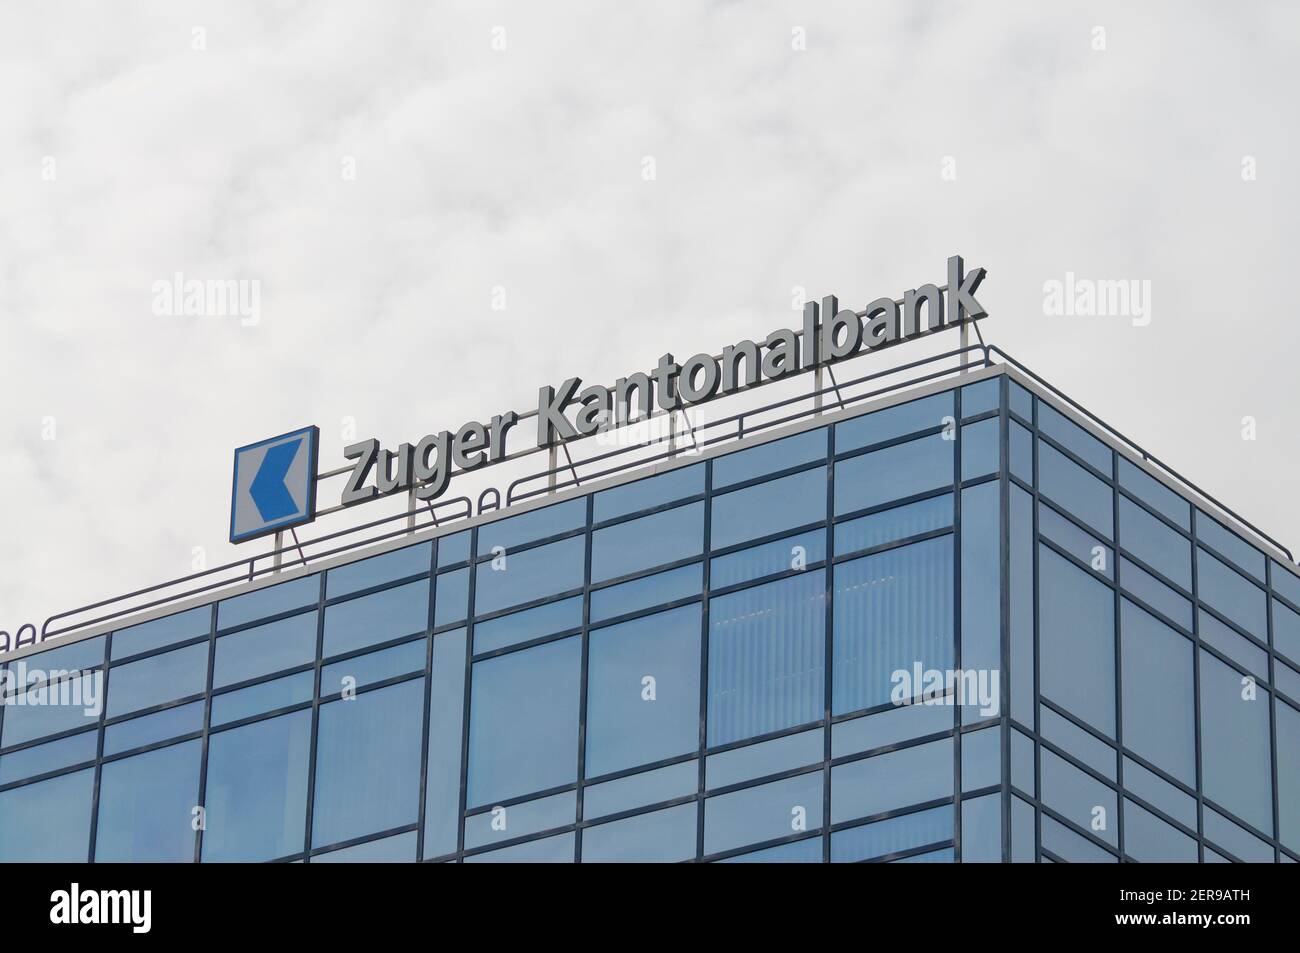 Zug, Suisse - 26 février 2021 : panneau Zuger Kantonalbank ou Zuger KB Bank suspendu au siège de Zug, Suisse Banque D'Images